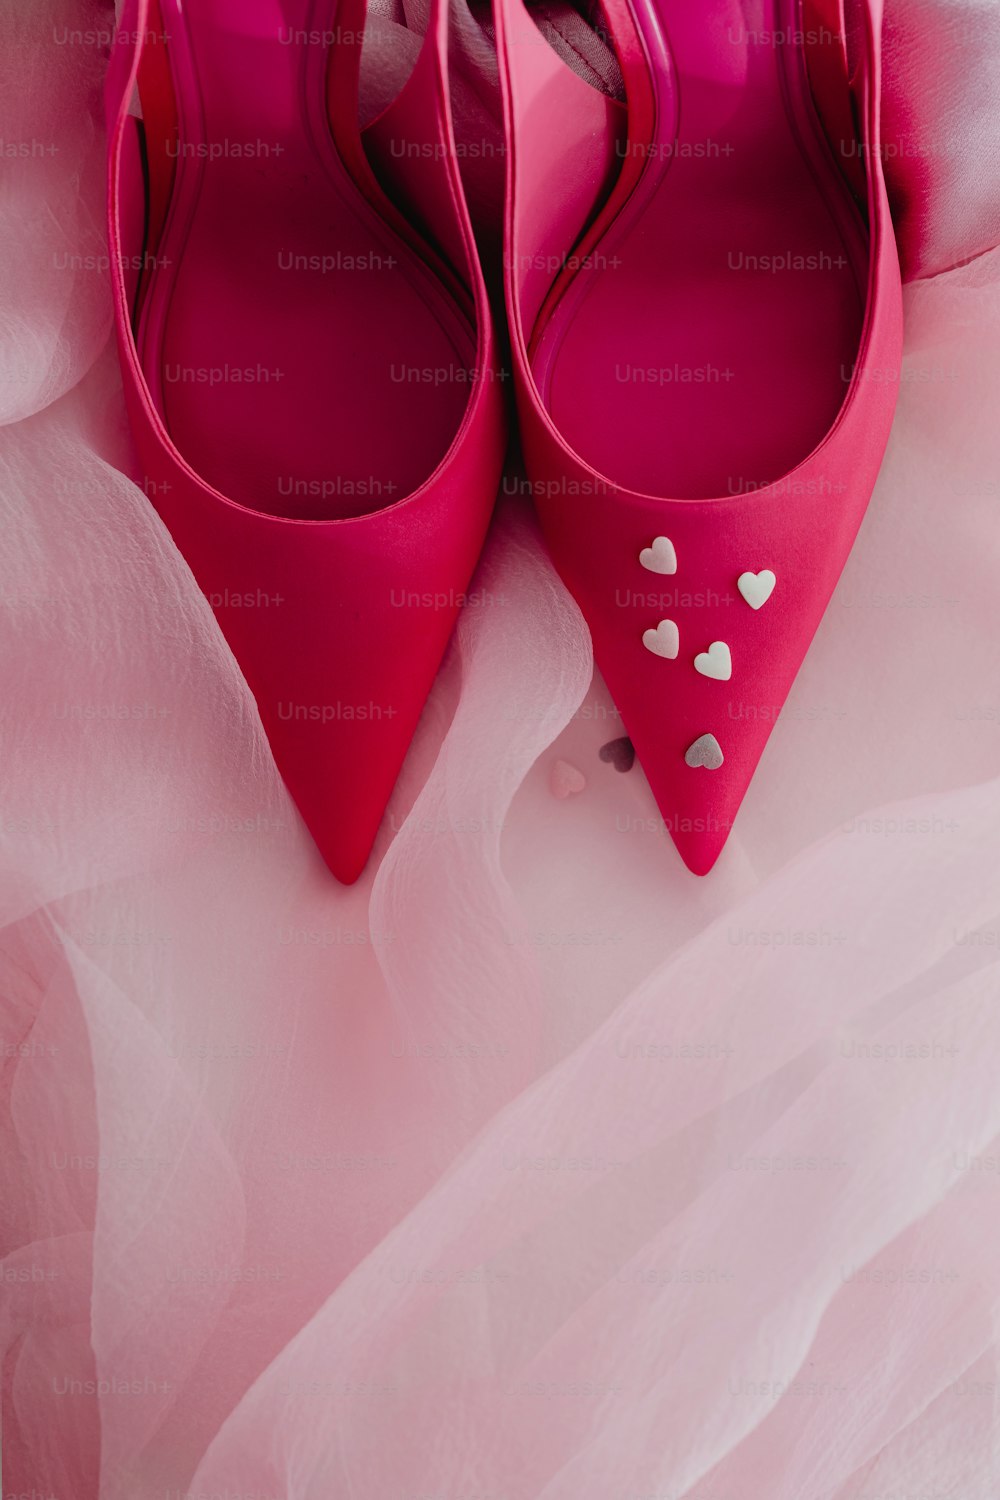 un paio di scarpe rosa con cuori su di loro